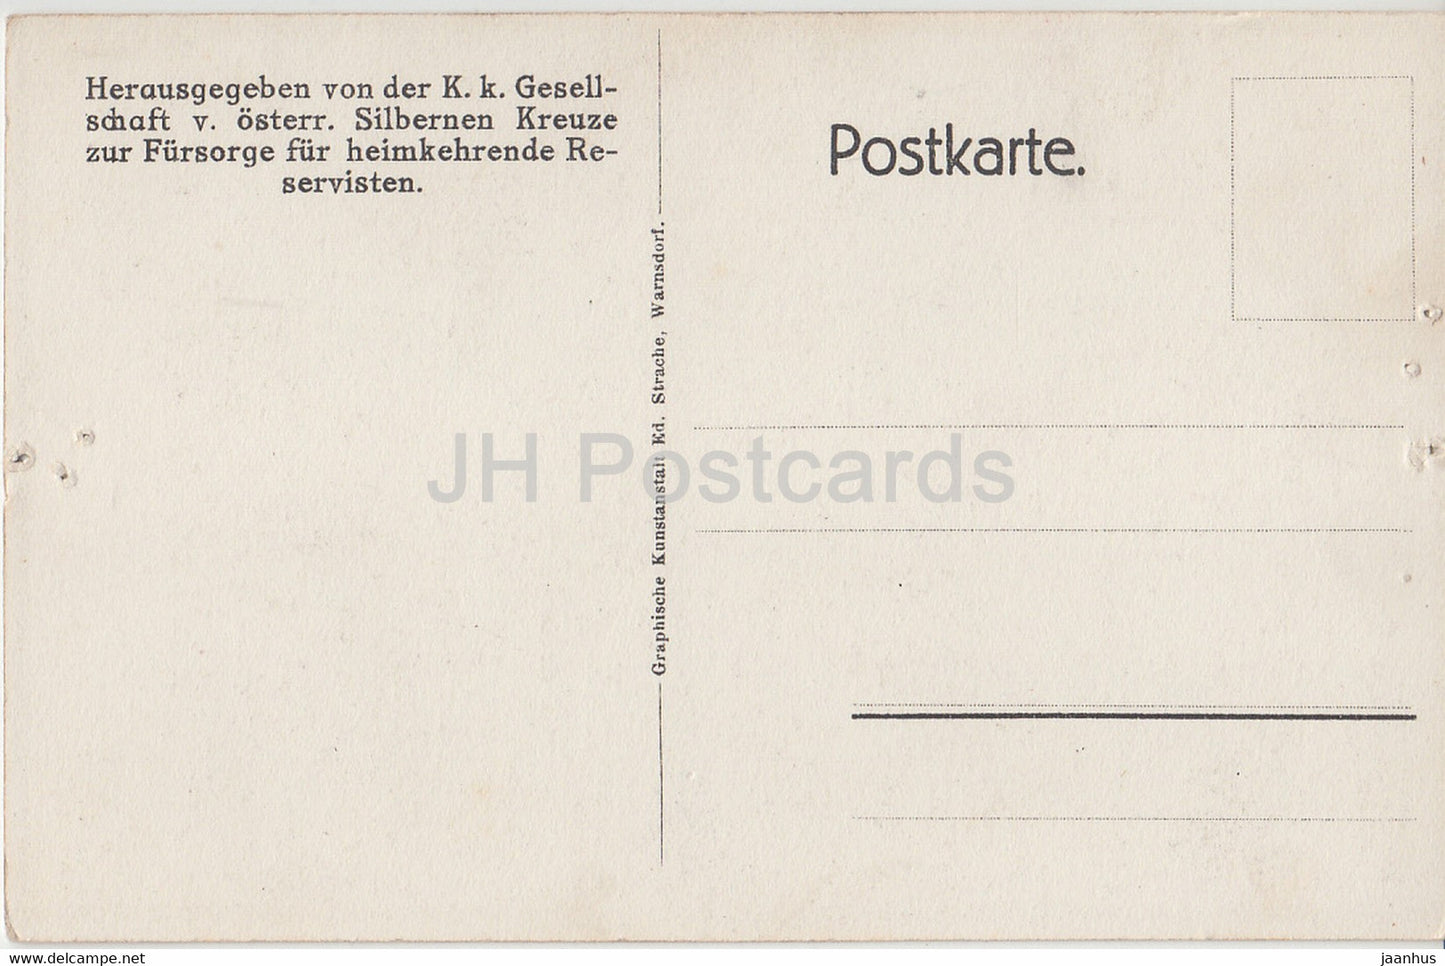 General Laudon - Pferd - alte Postkarte - Österreich - unbenutzt